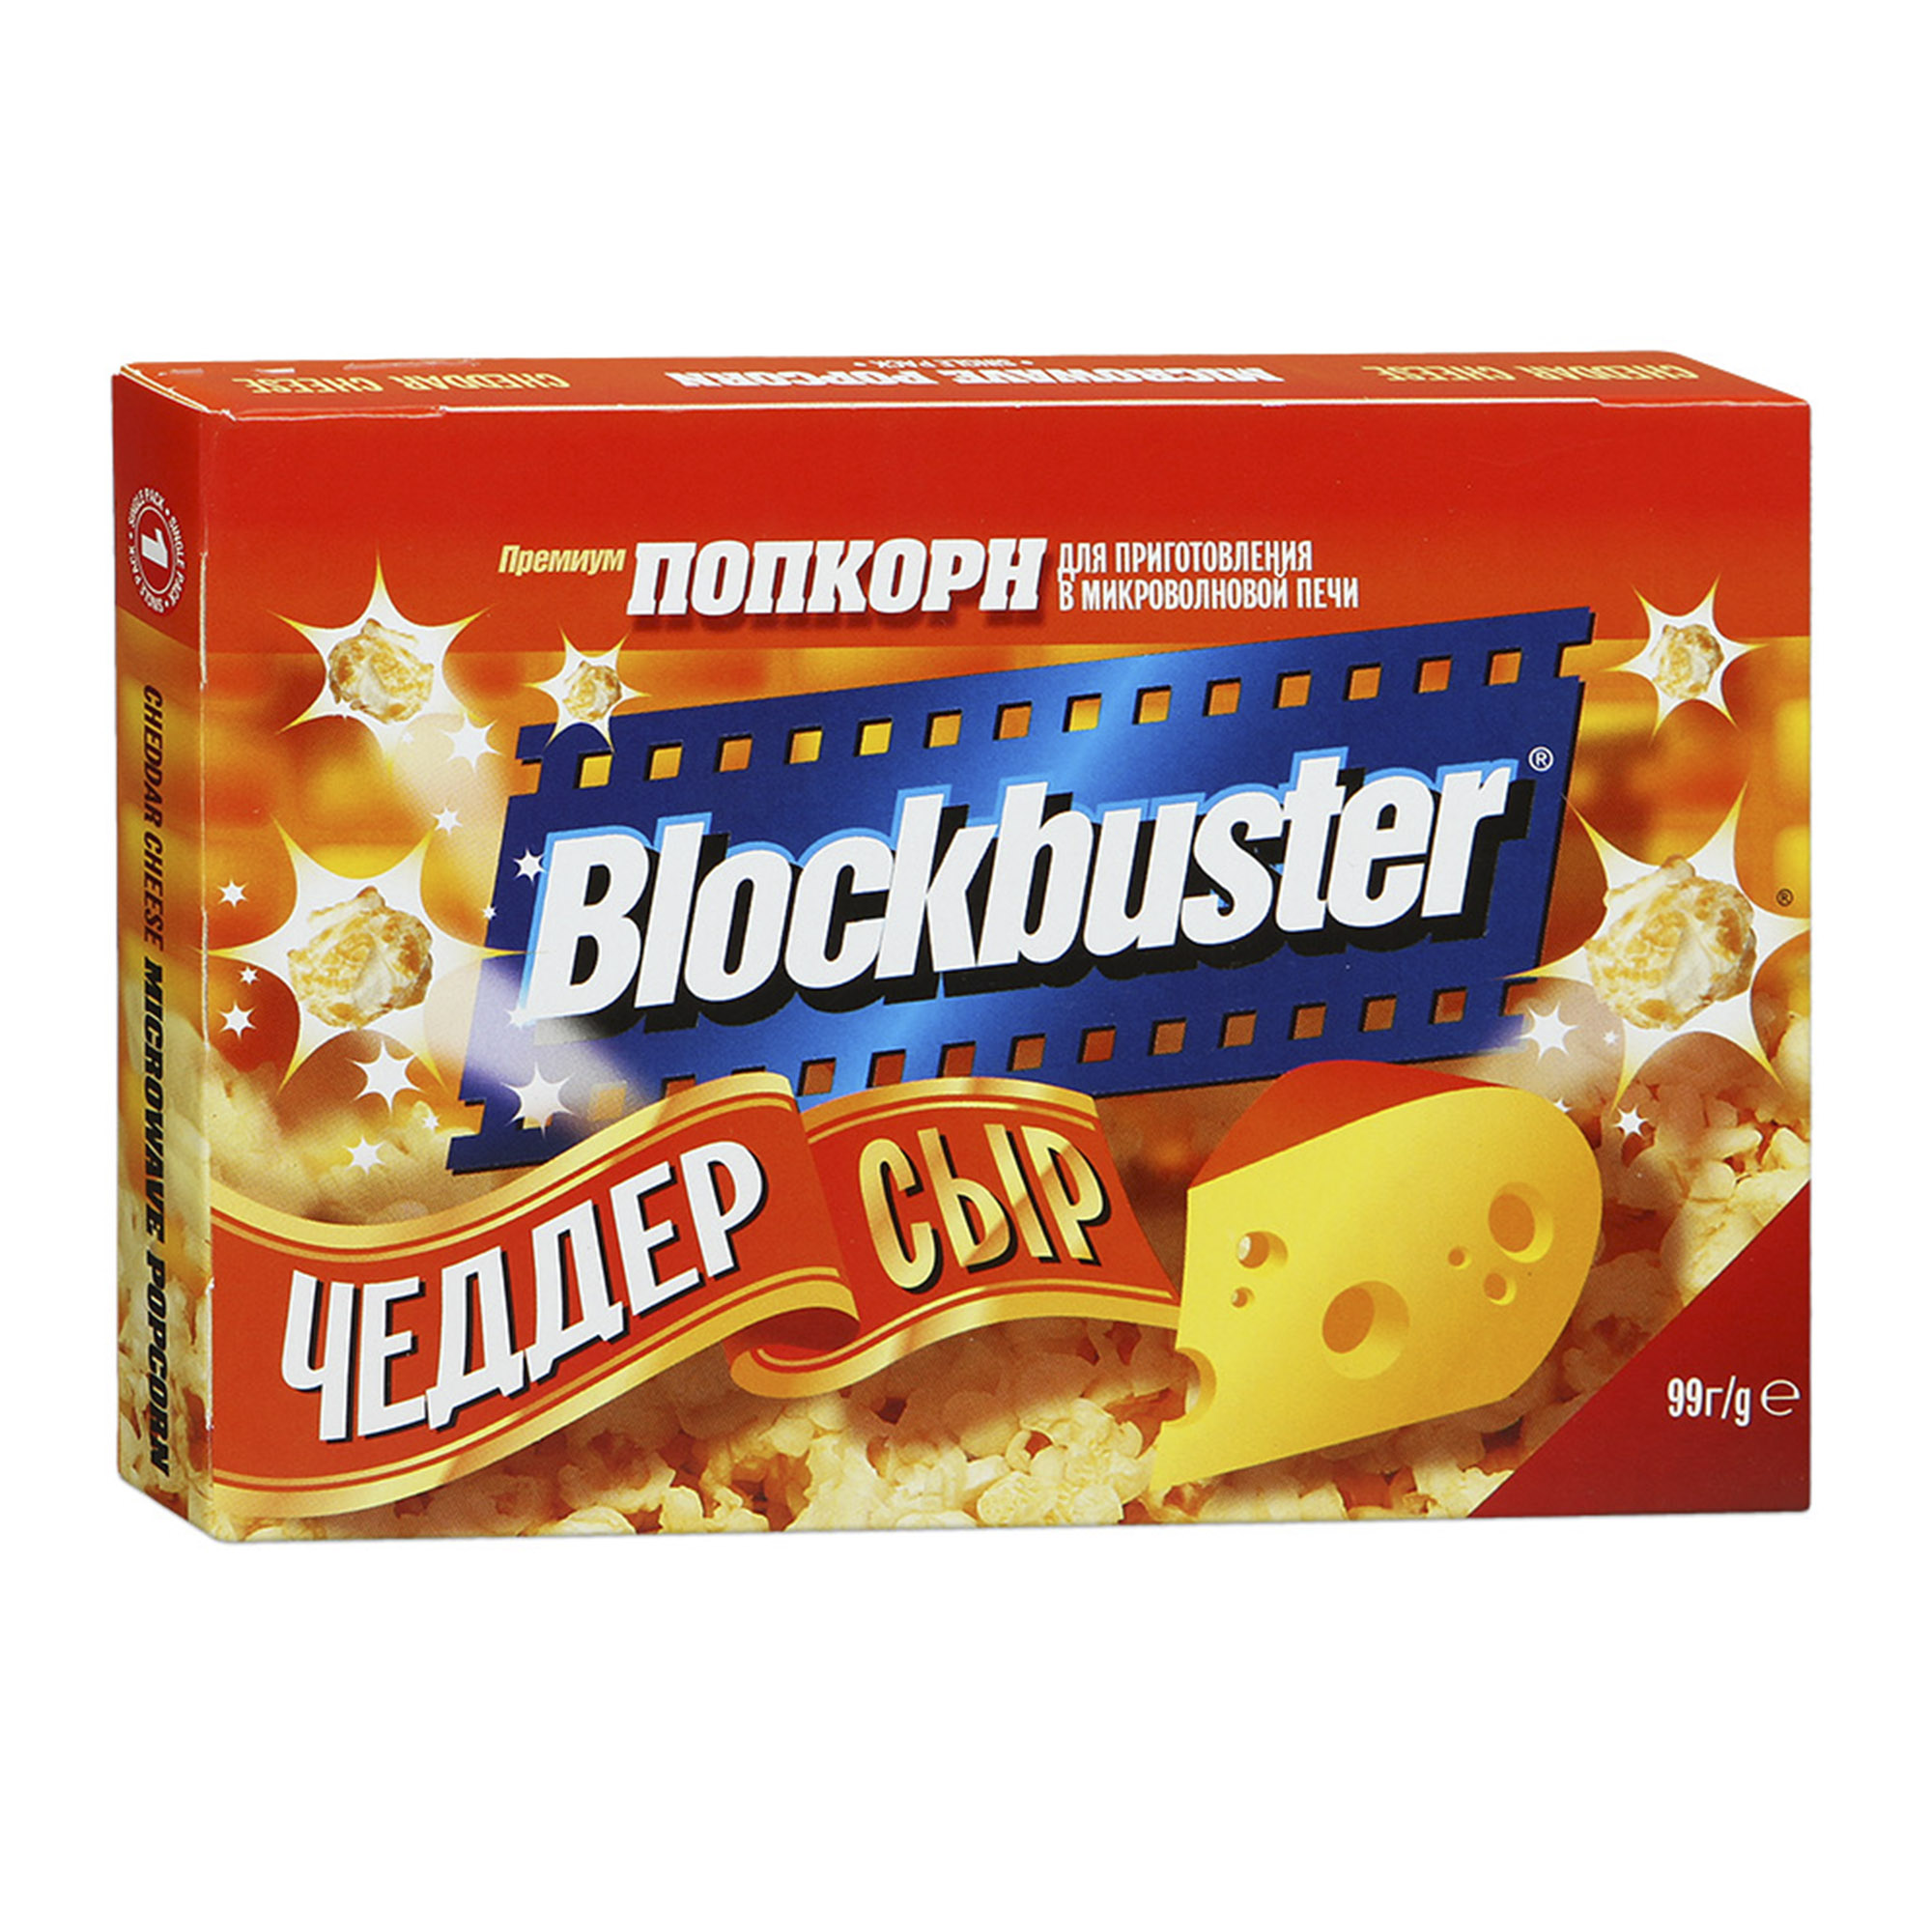 Попкорн Blockbuster с сыром Чеддер 90 г попкорн blockbuster соленый со вкусом сыра чеддер 99 г